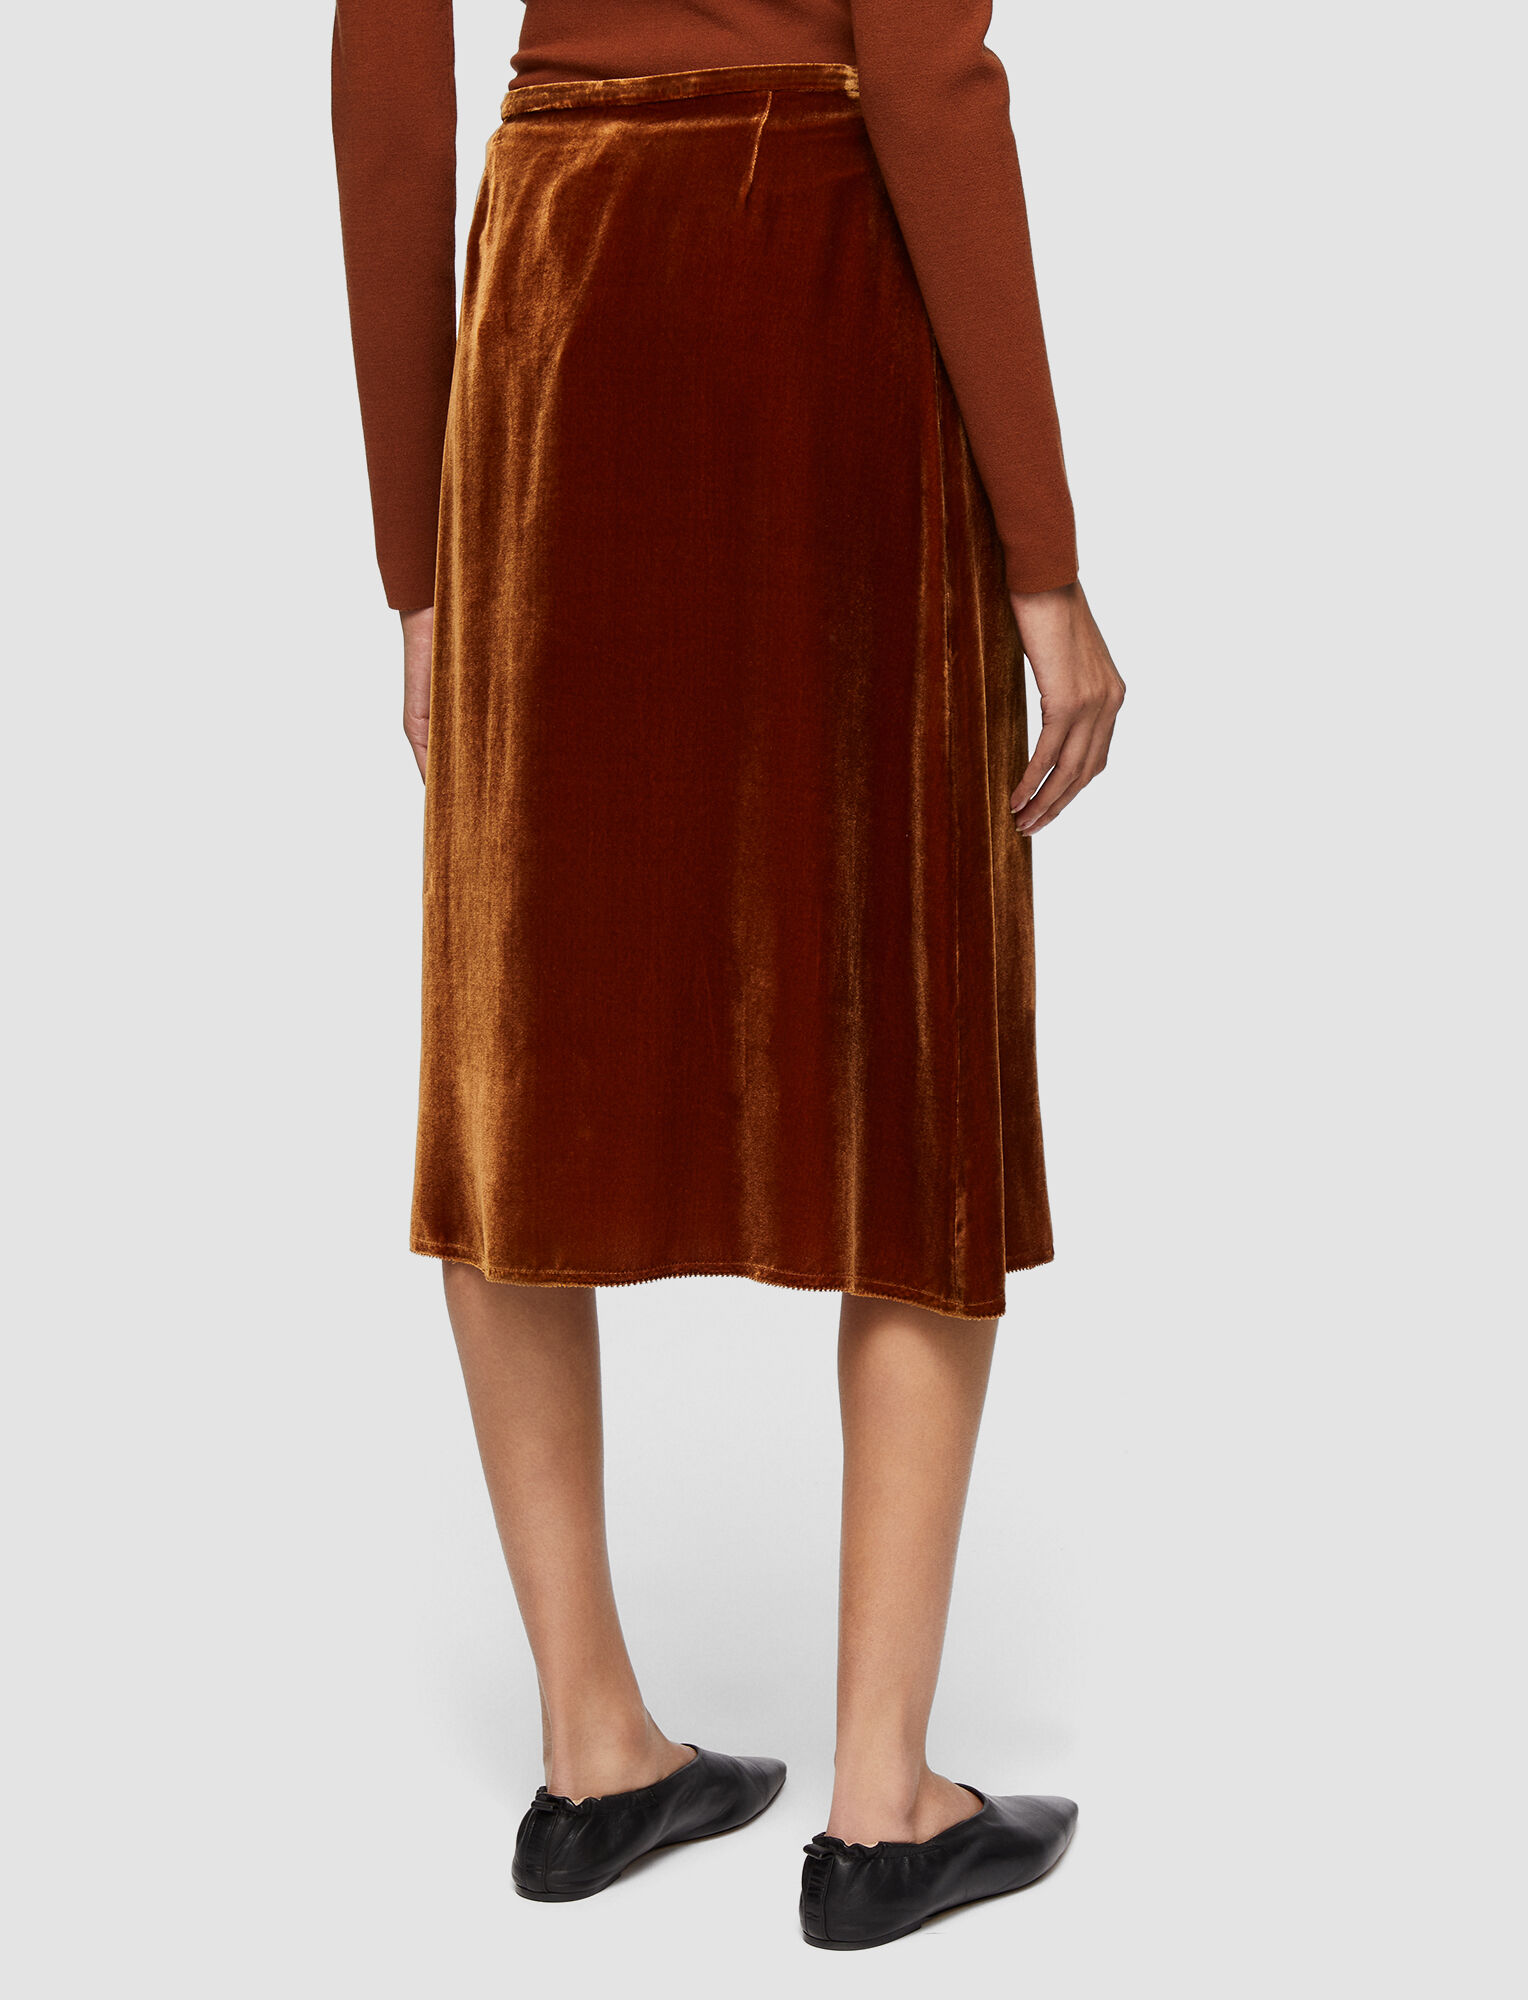 Joseph, Drapy Velvet Sabra Skirt, in Copper